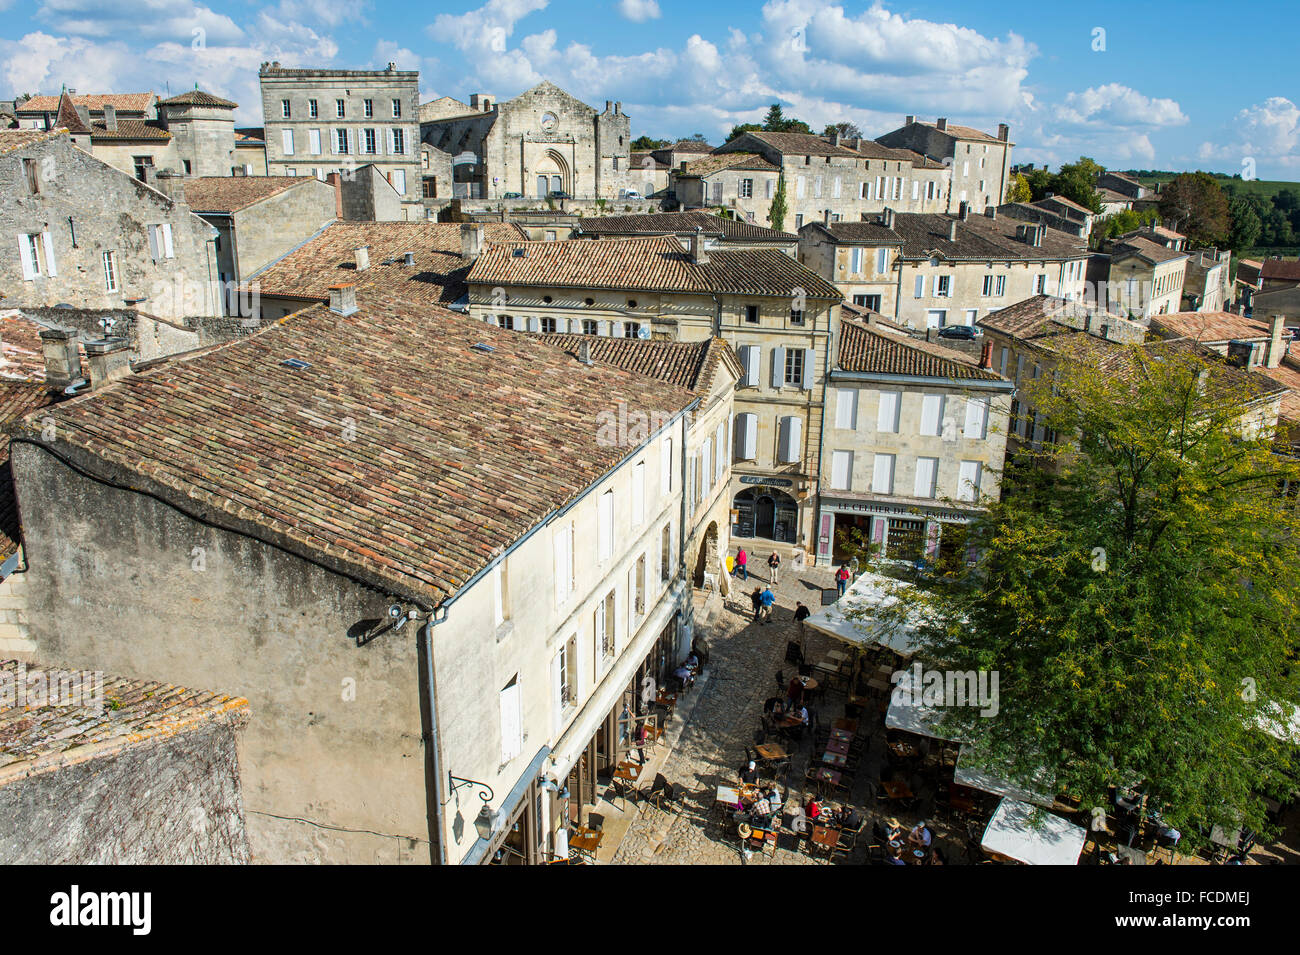 View across the historic centre, Saint Emilion, Département Gironde, France Stock Photo